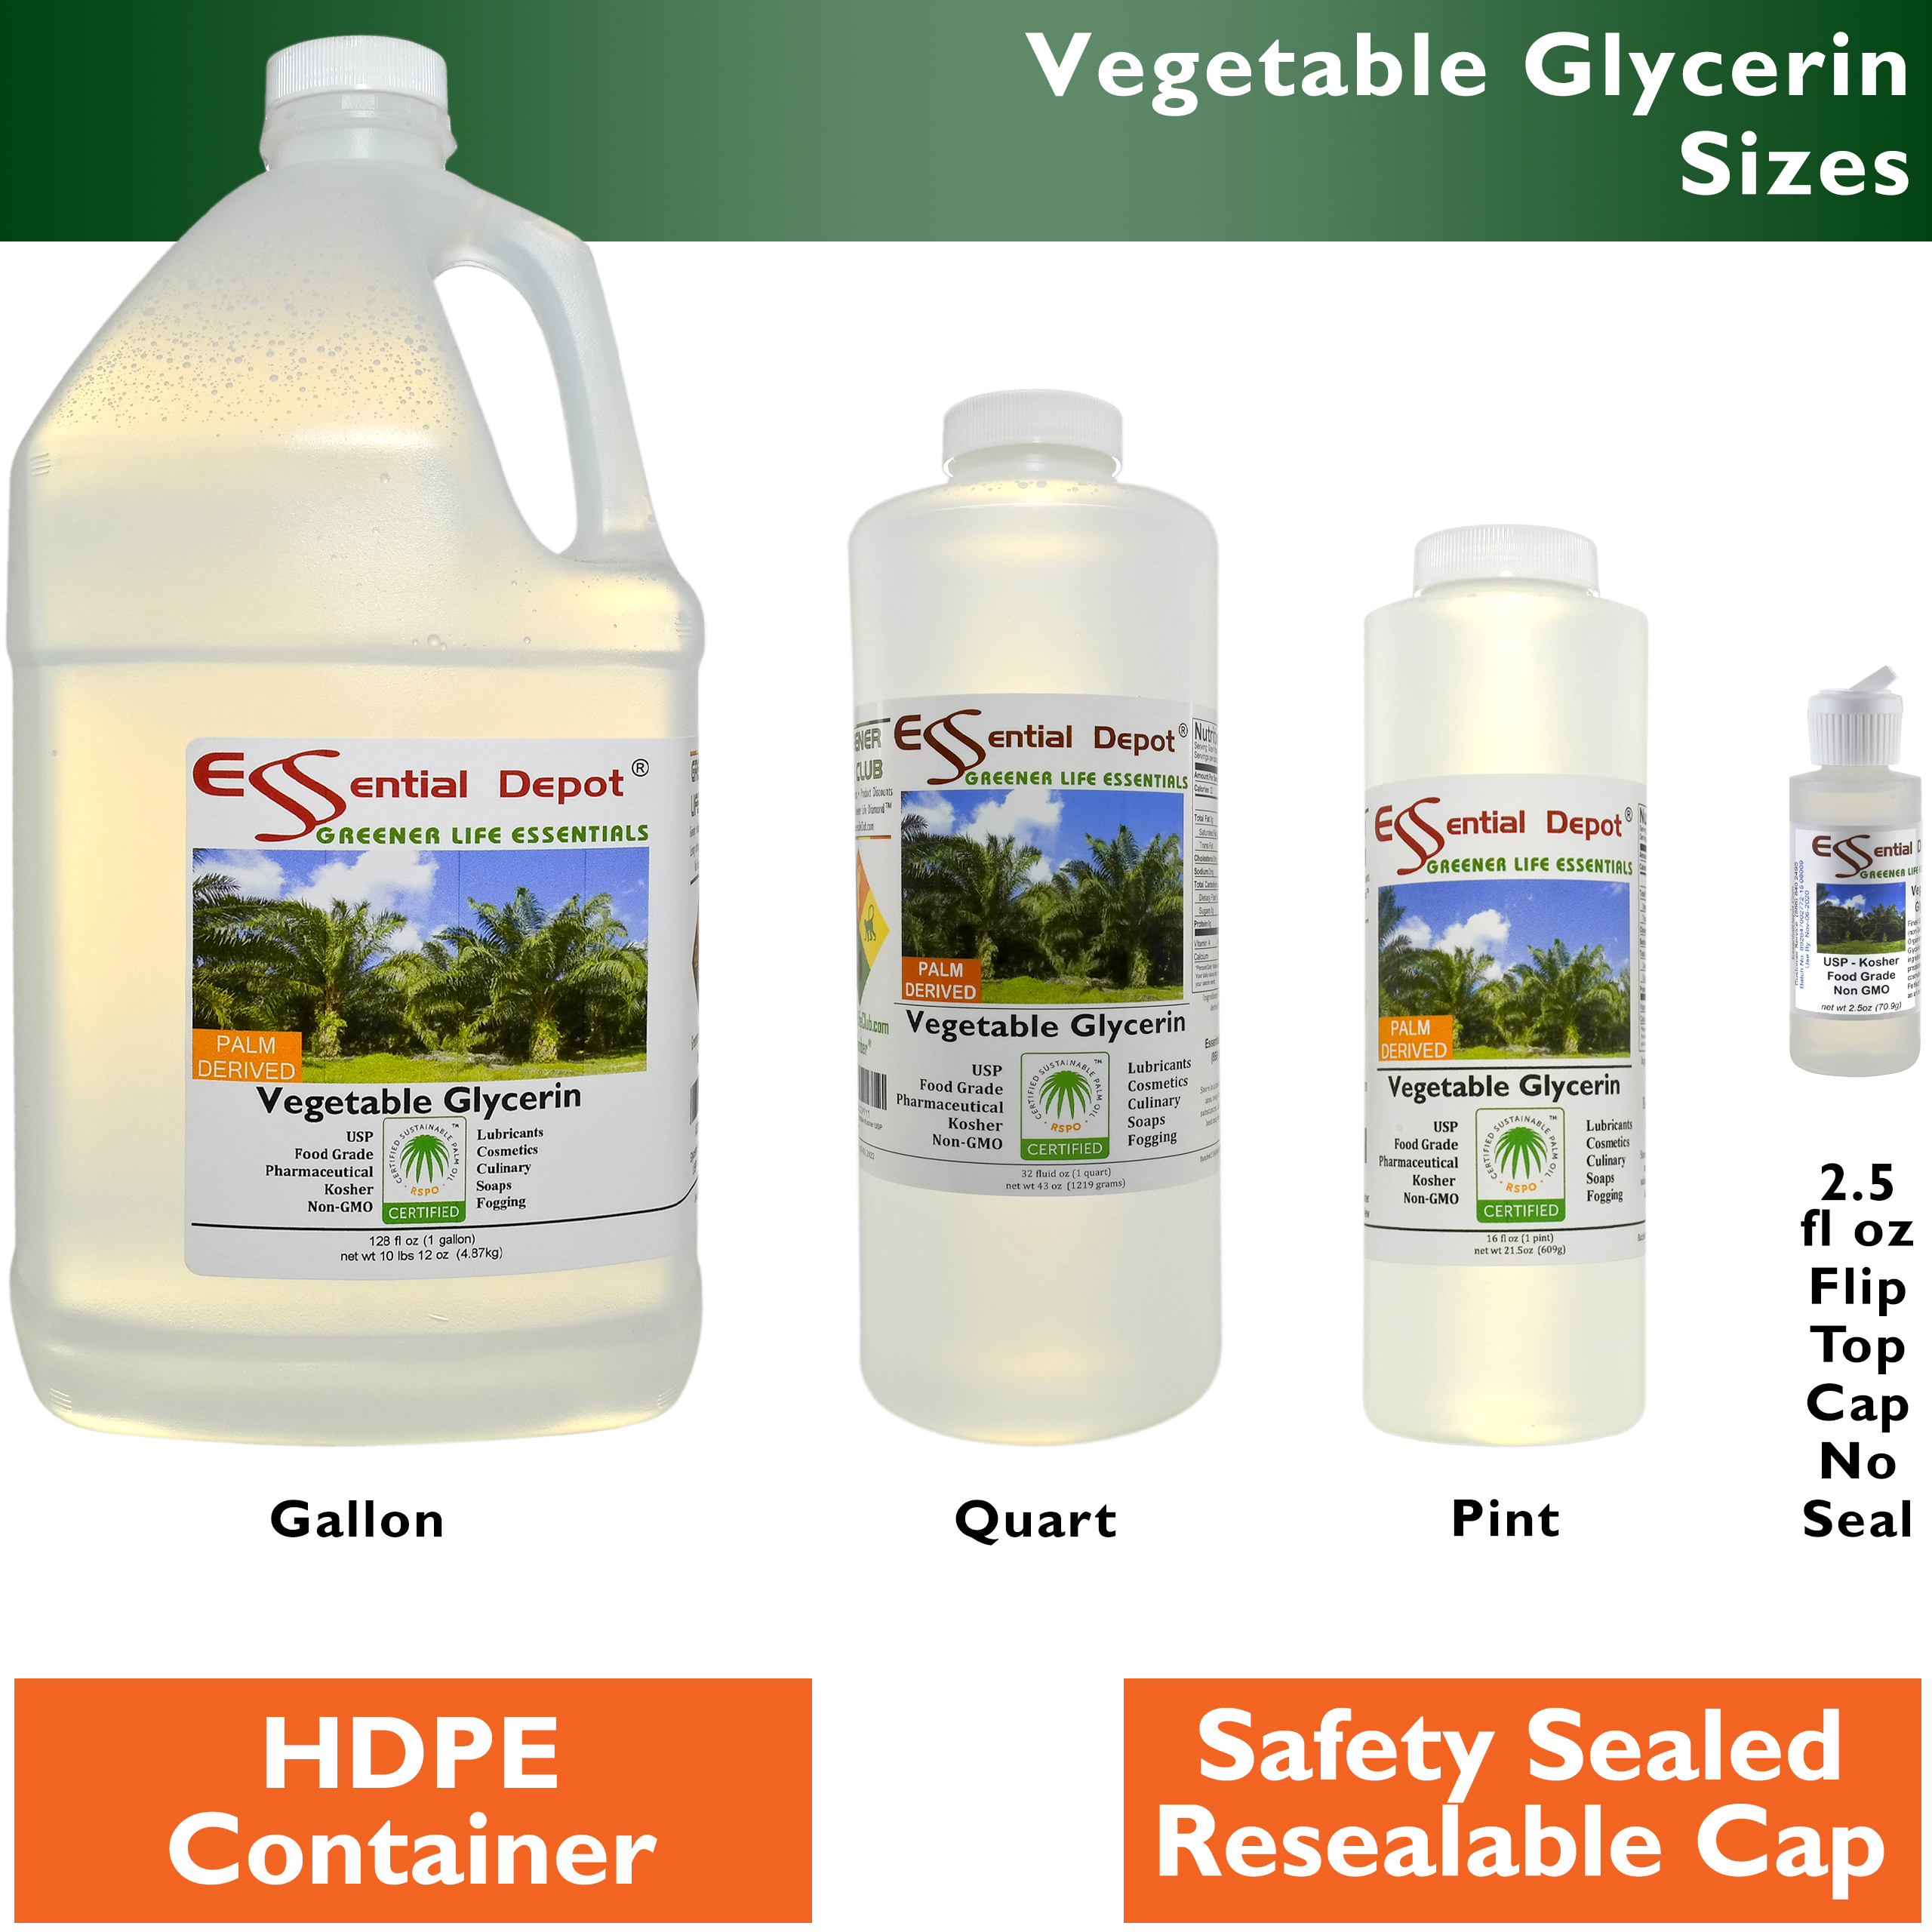 Vegetable Glycerin: Essential Depot